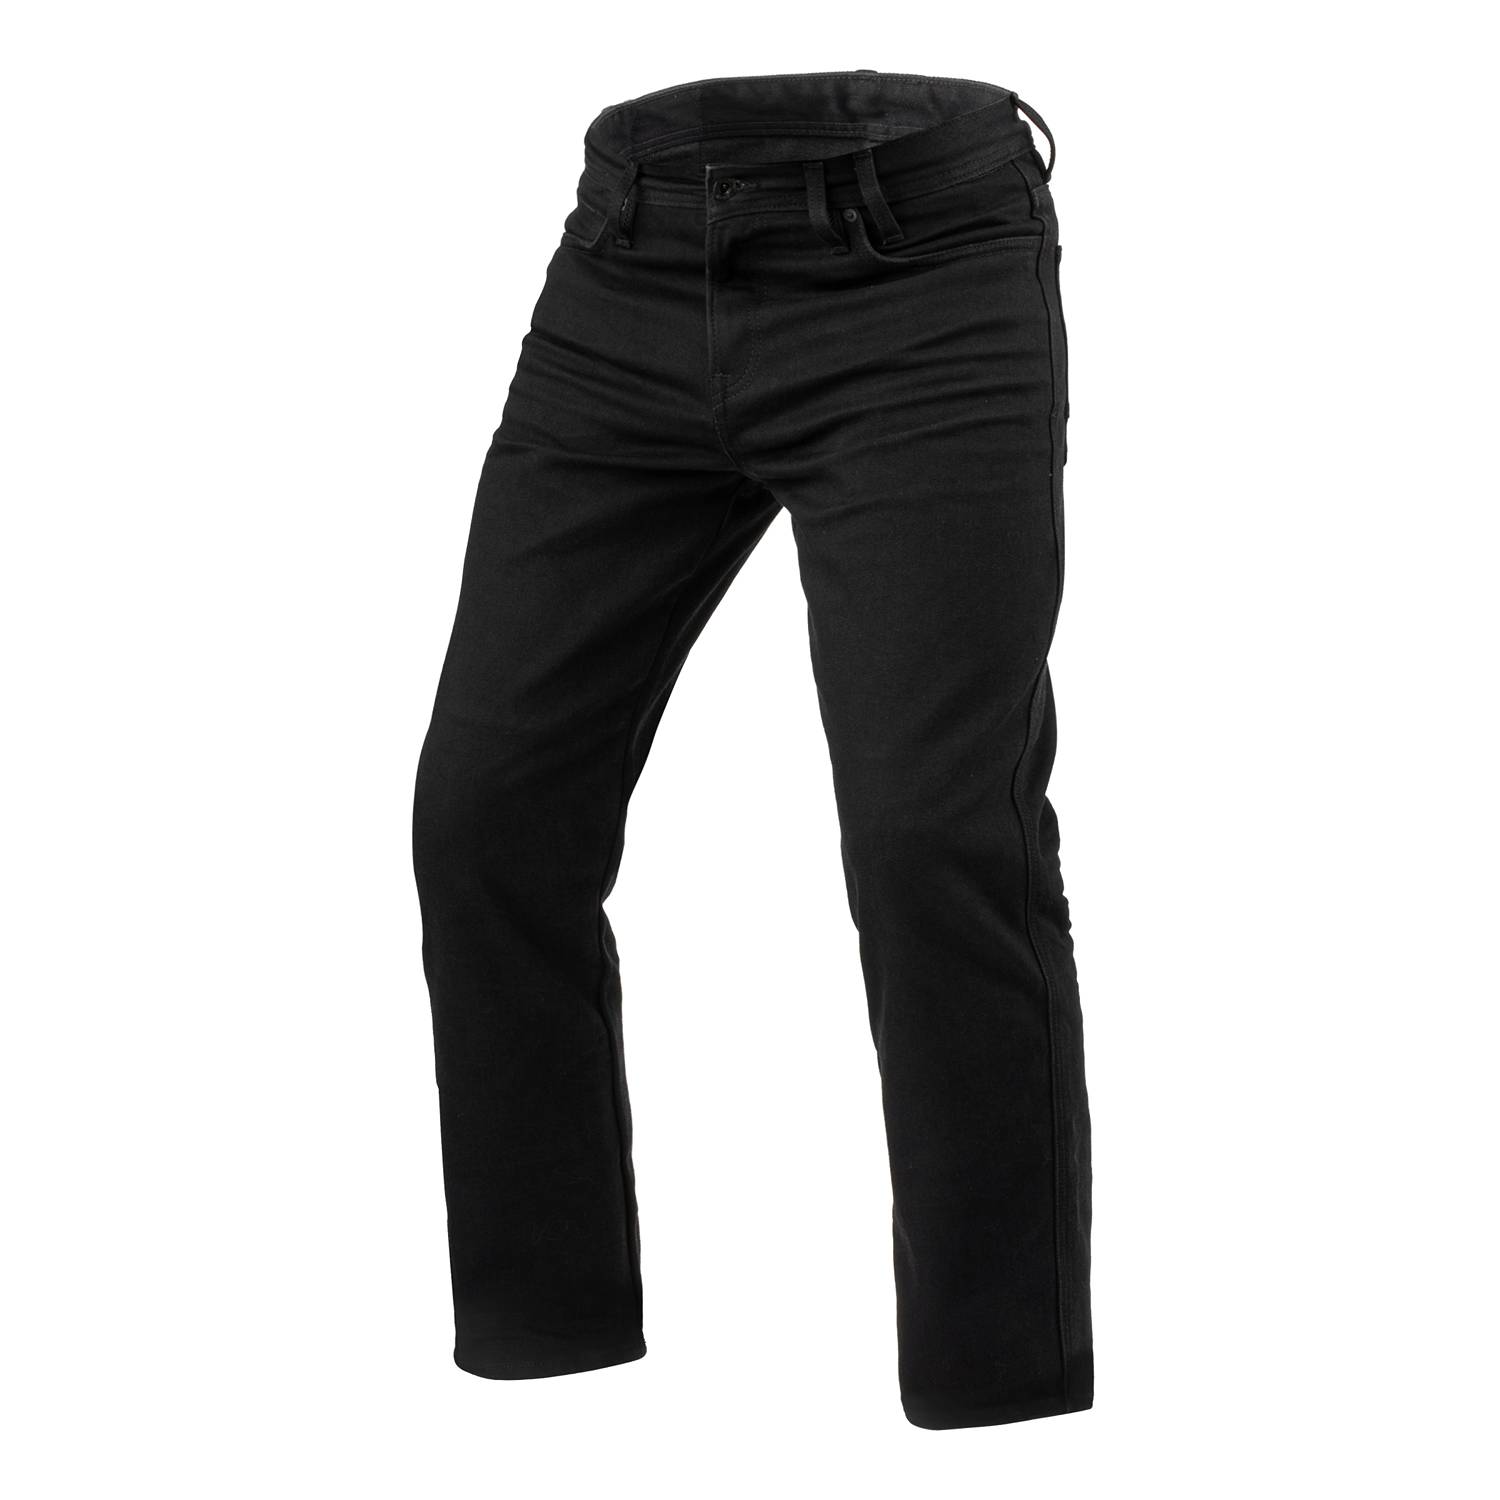 Image of REV'IT! Jeans Lombard 3 RF Black L32 Motorcycle Jeans Size L32/W33 EN